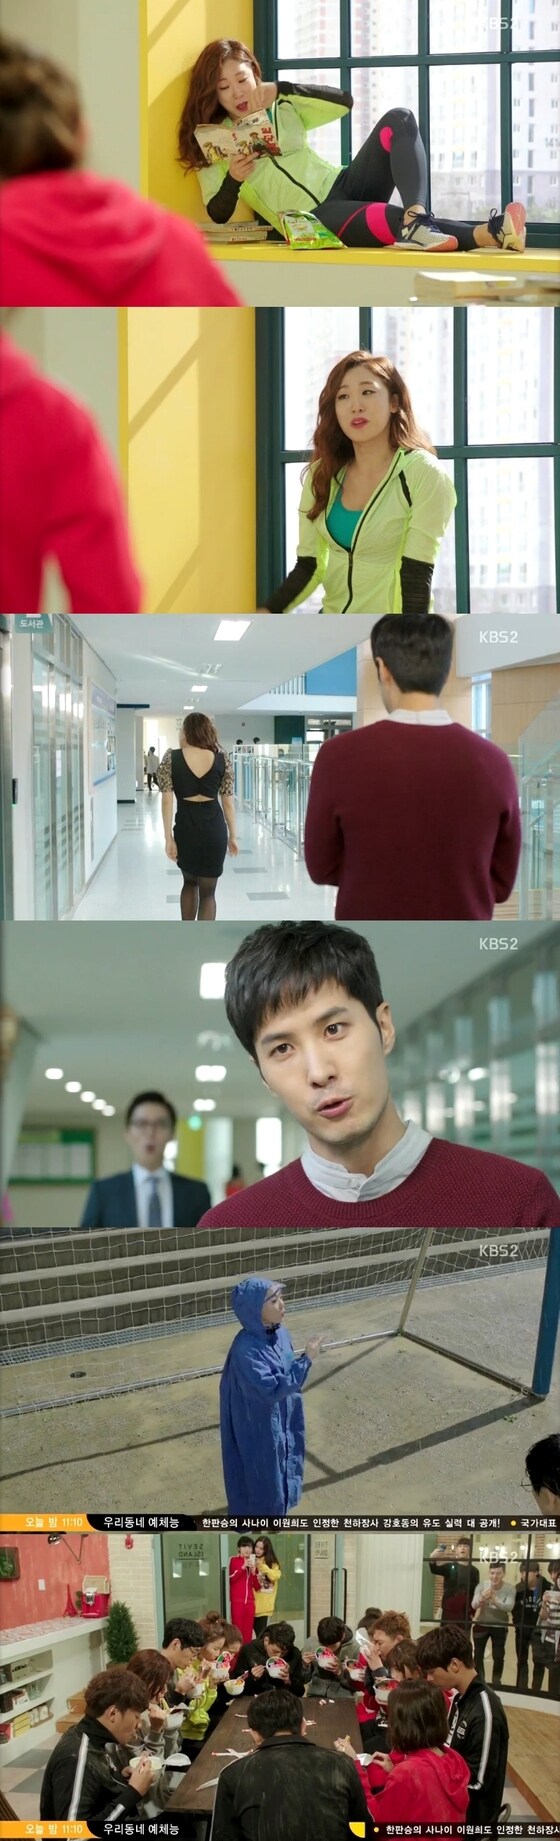 '발칙하게 고고'가 색다른 매력의 선생님 모습을 그려냈다. © News1star/KBS2 ‘발칙하게 고고’ 캡처